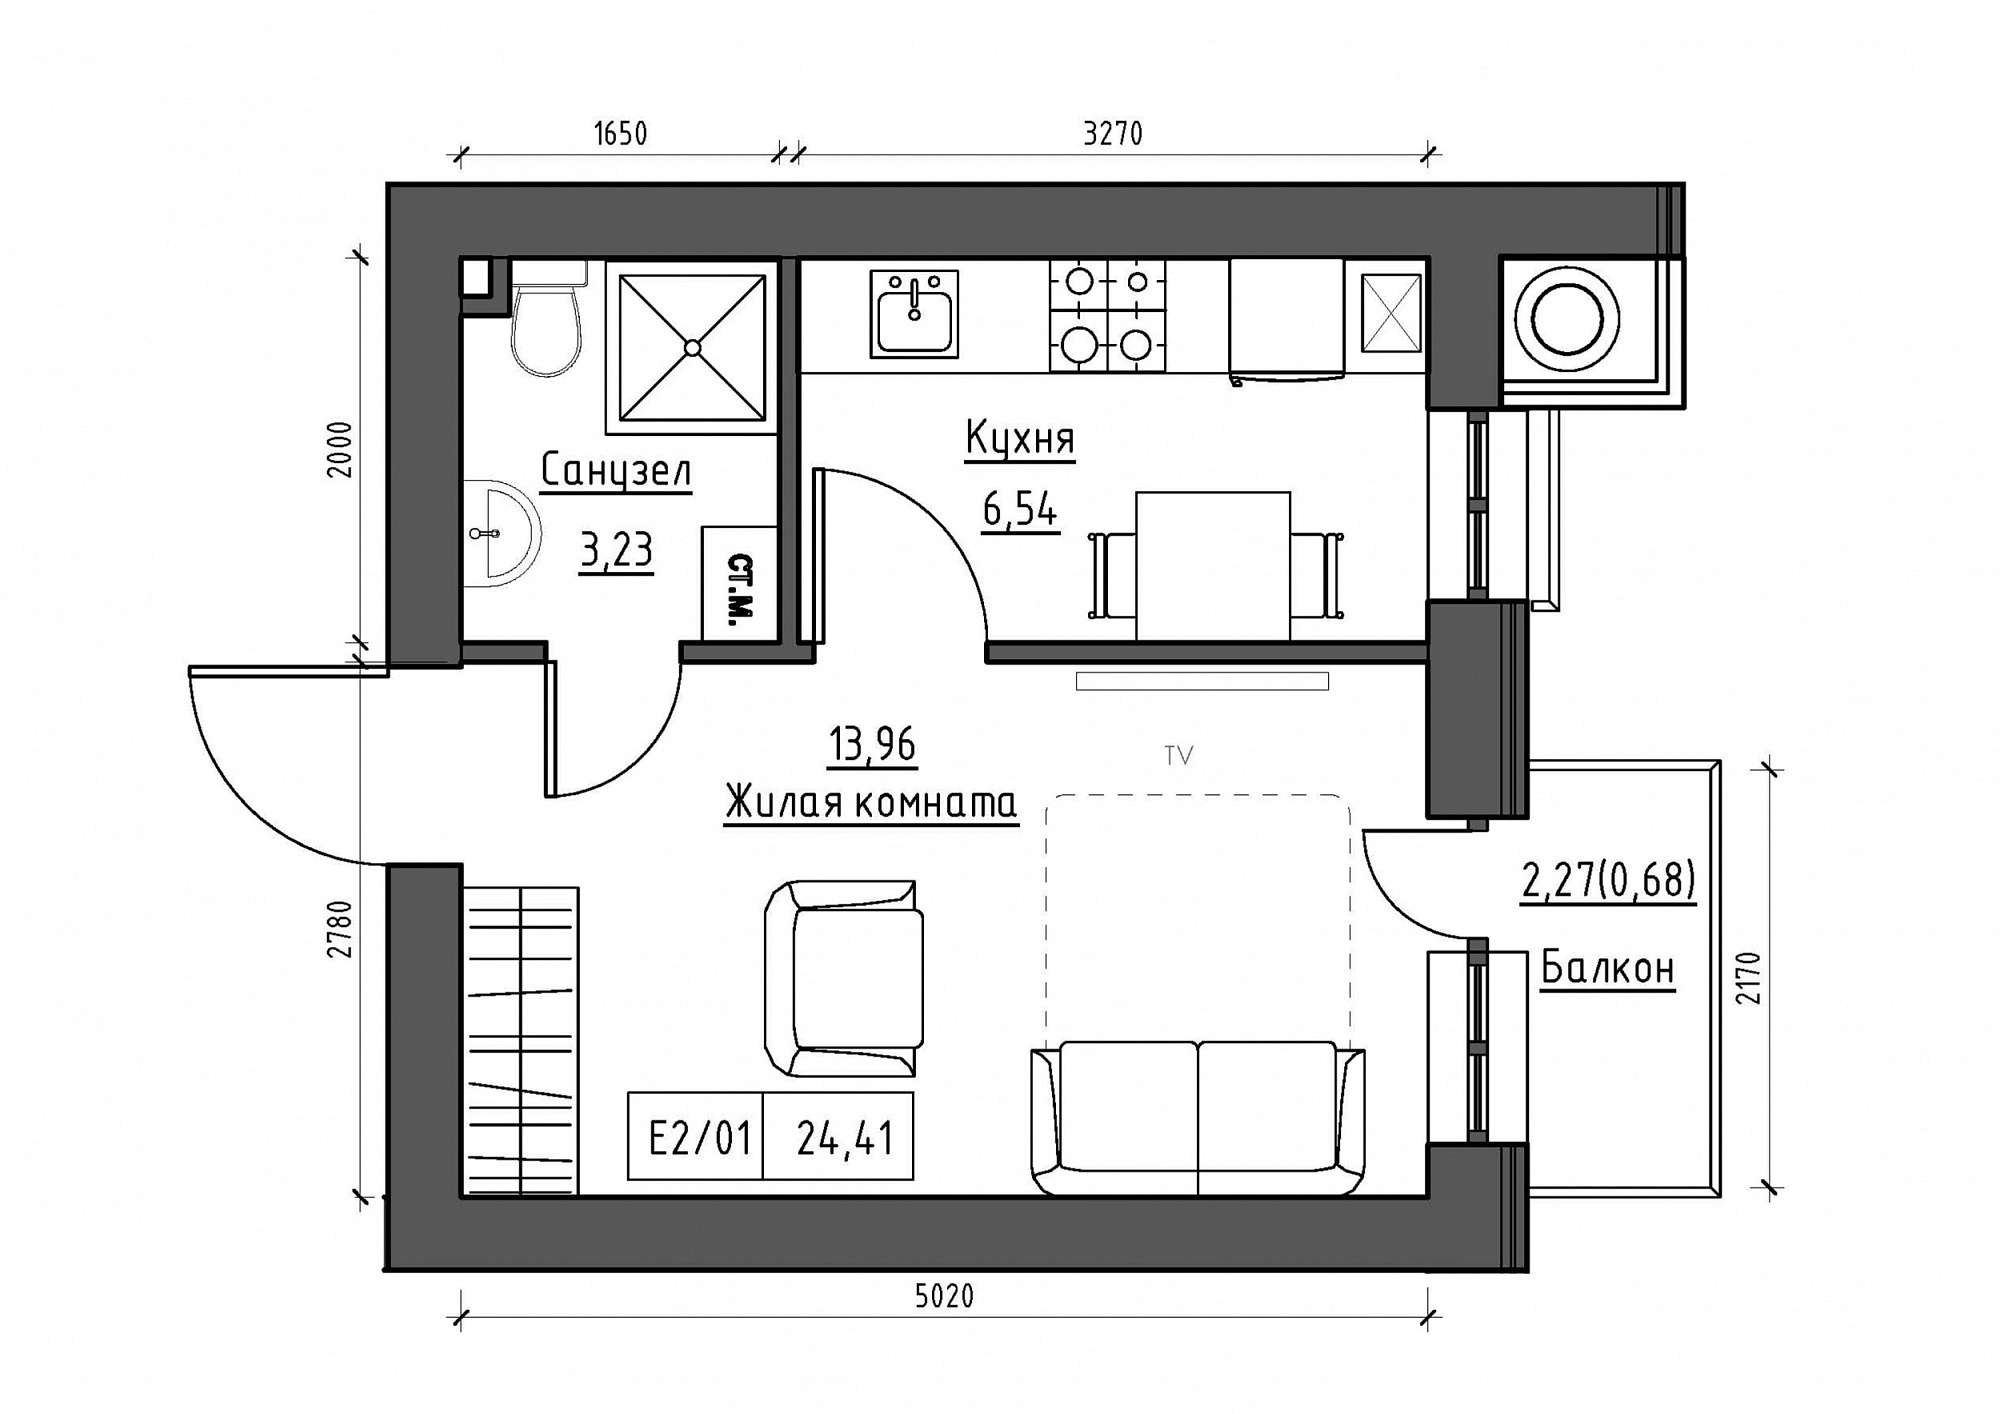 Планування 1-к квартира площею 24.41м2, KS-011-03/0007.